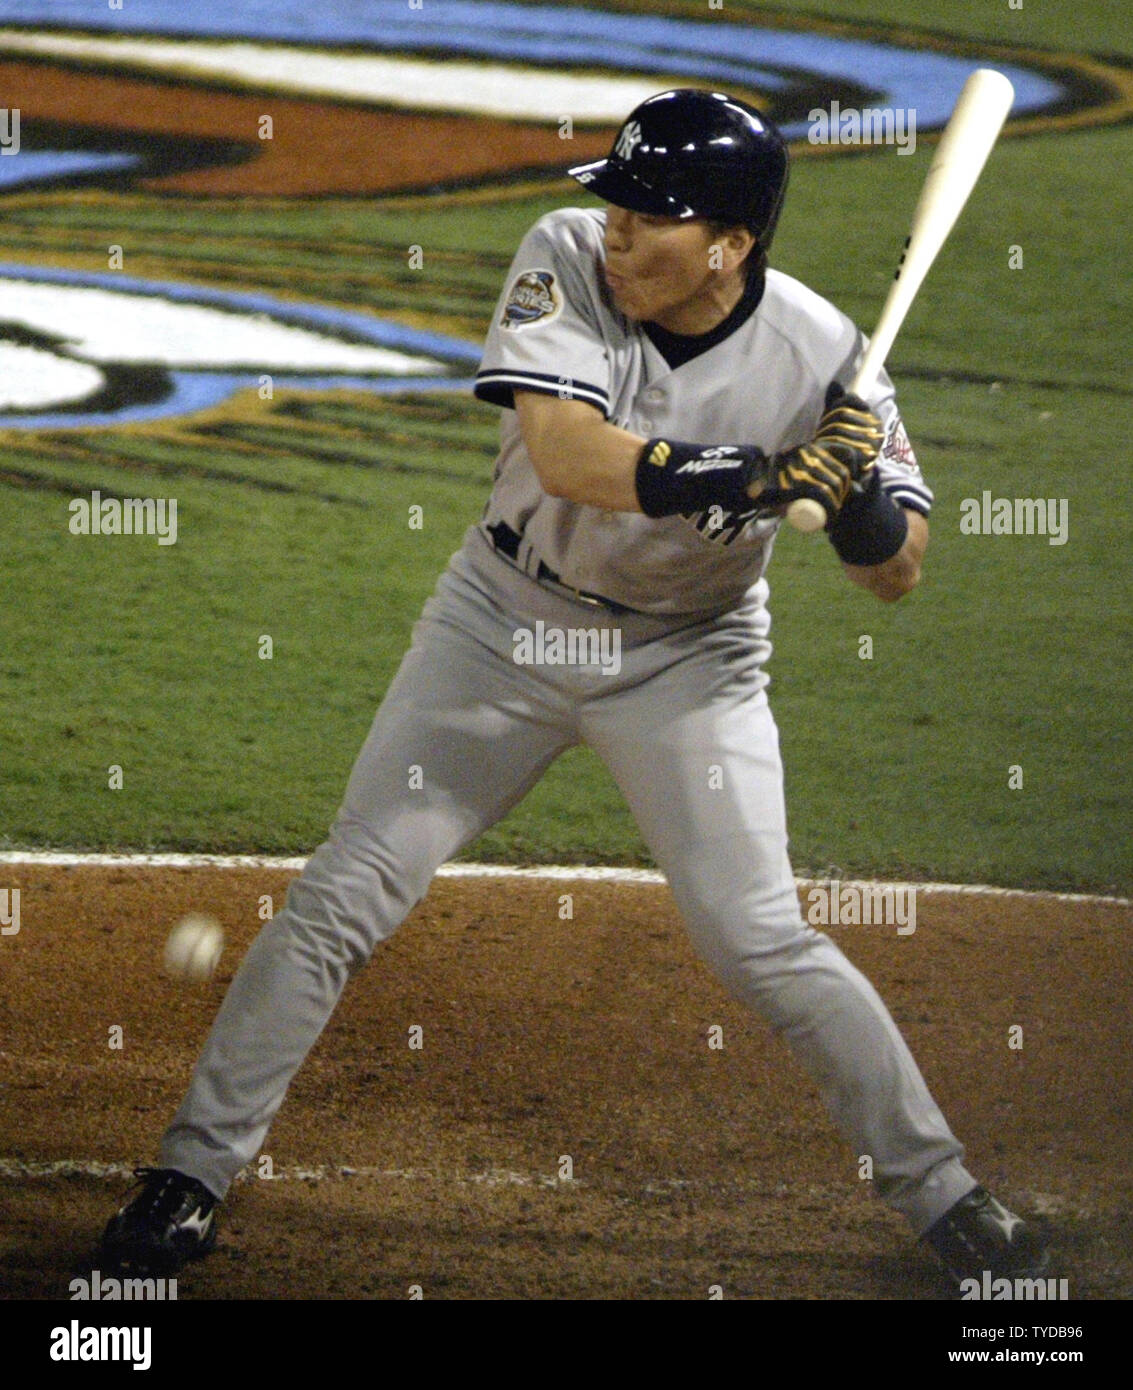 New York Yankees Hideki Matsui is hit by this Josh Beckett pitch